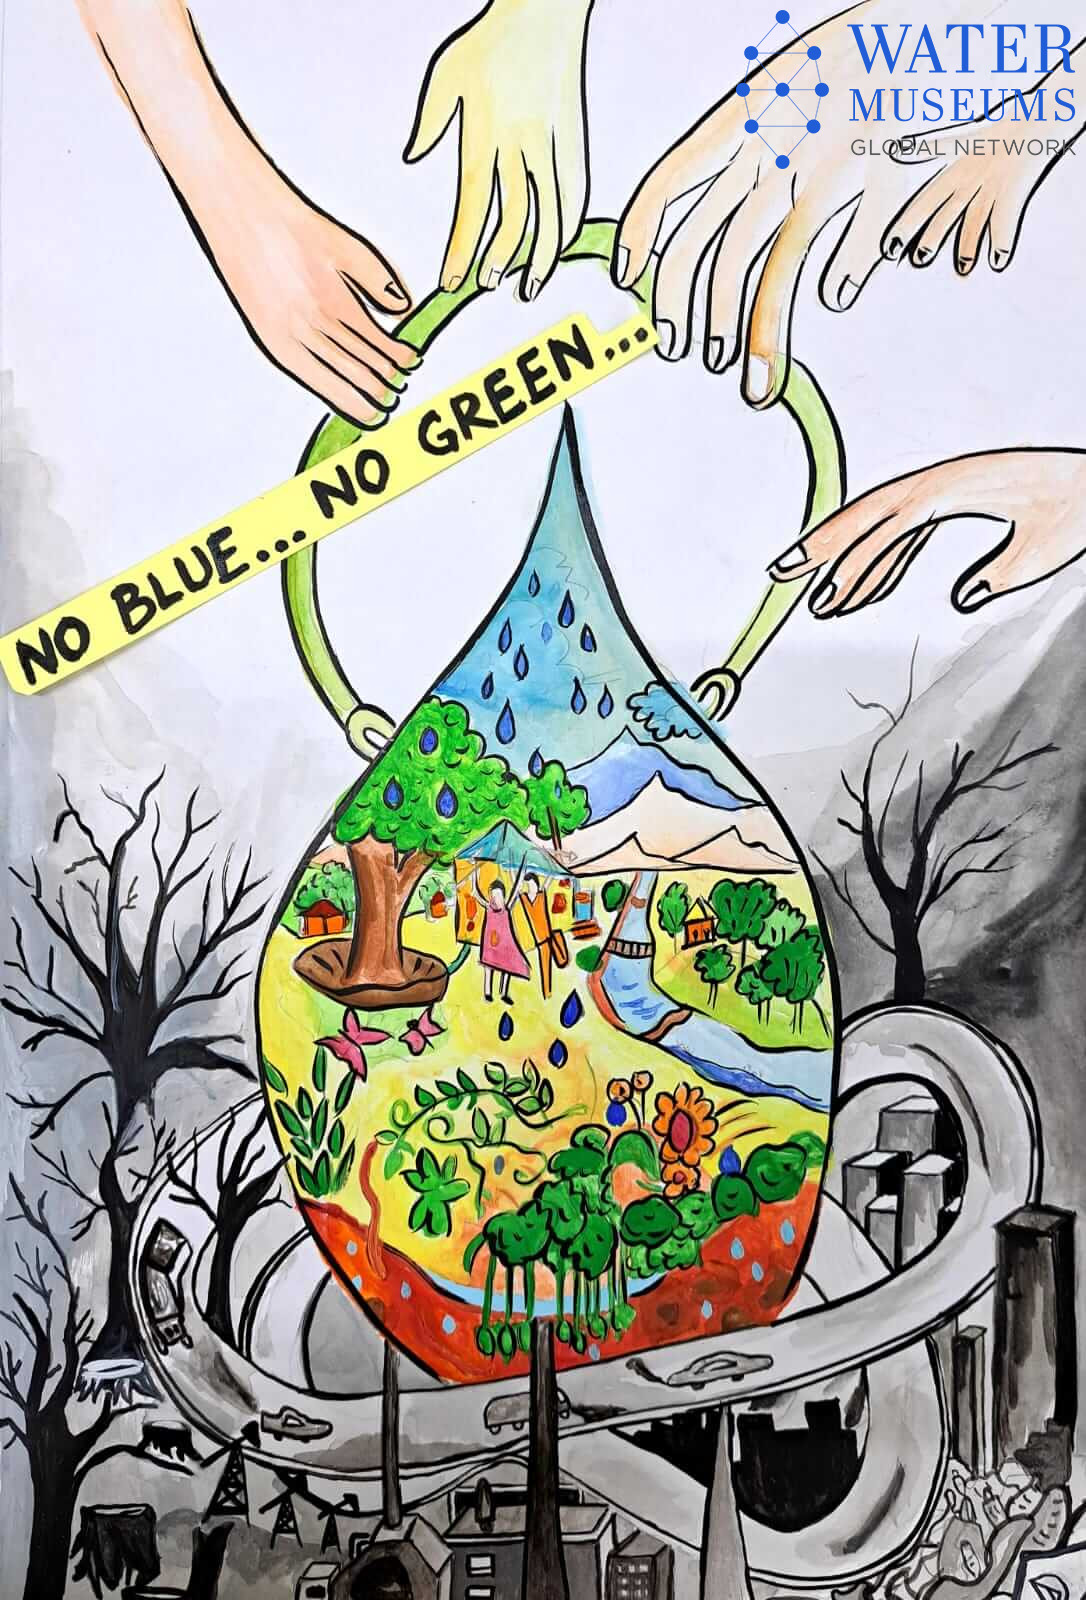 Save Water Drawing Images - Free Download on Freepik